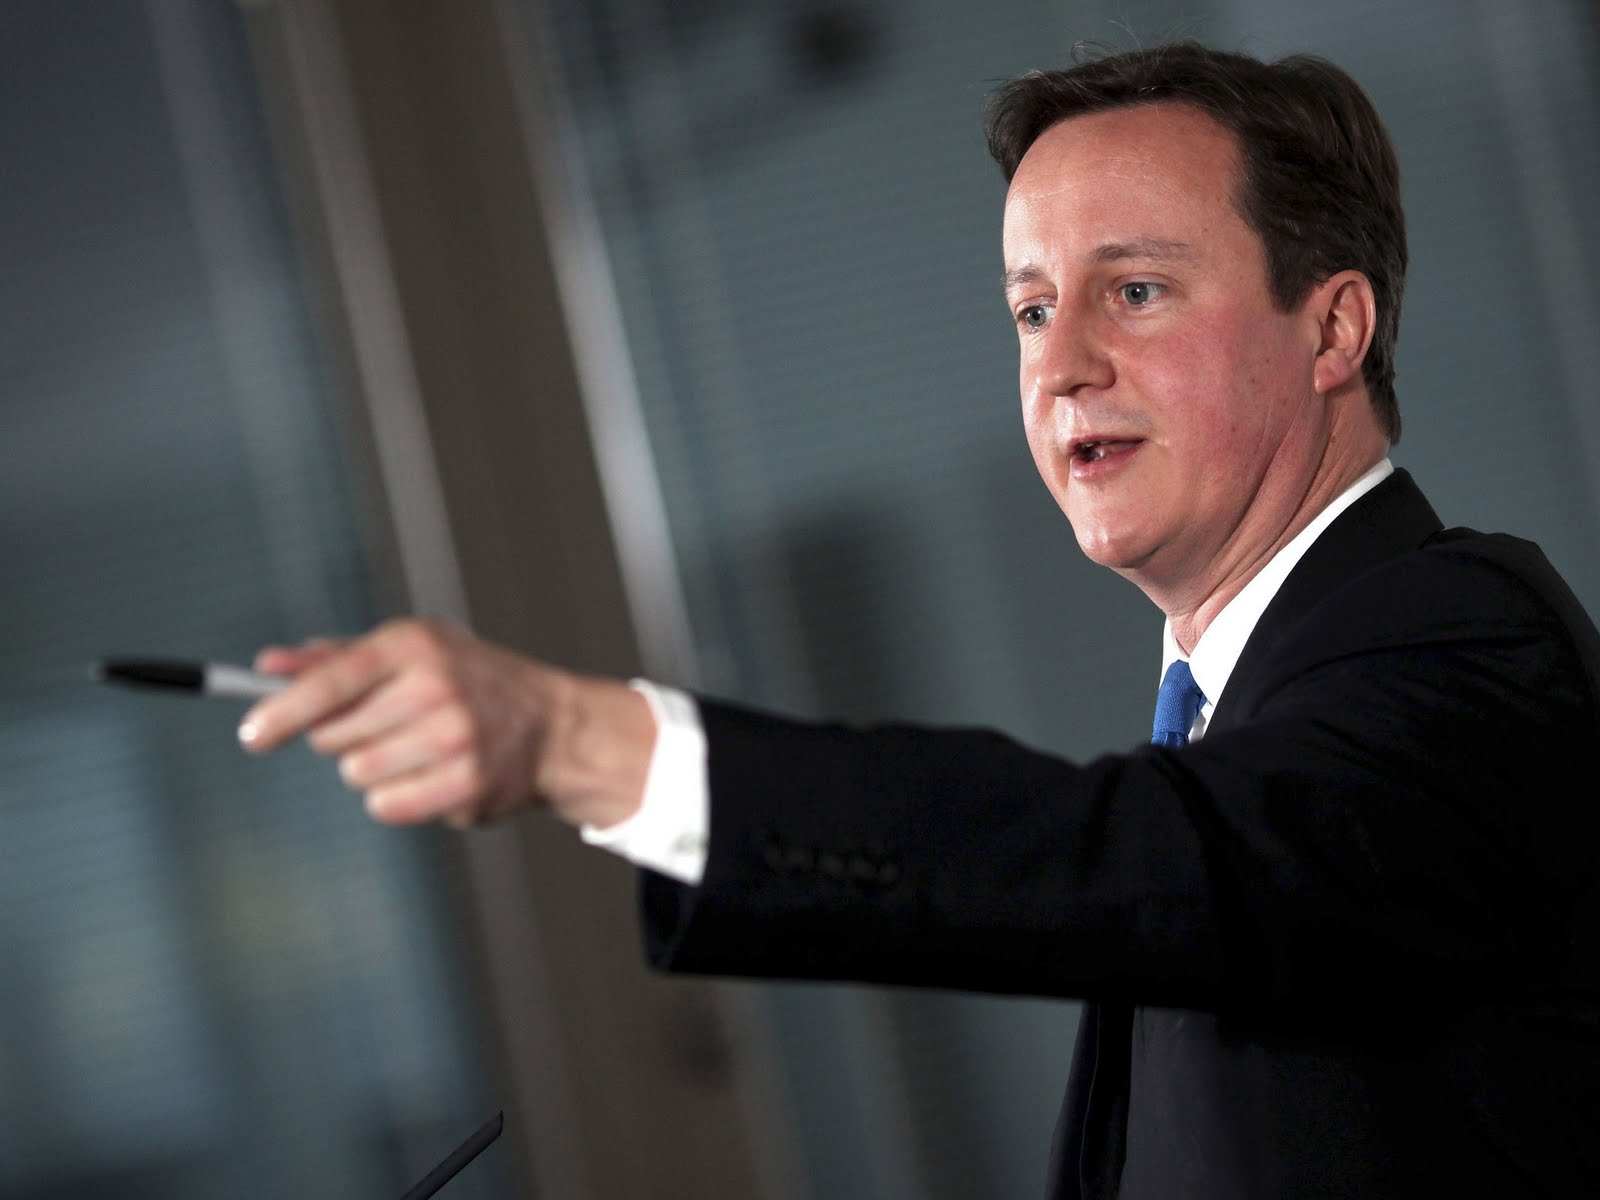 Terremoto conservador en el Reino Unido: todo el poder para Cameron